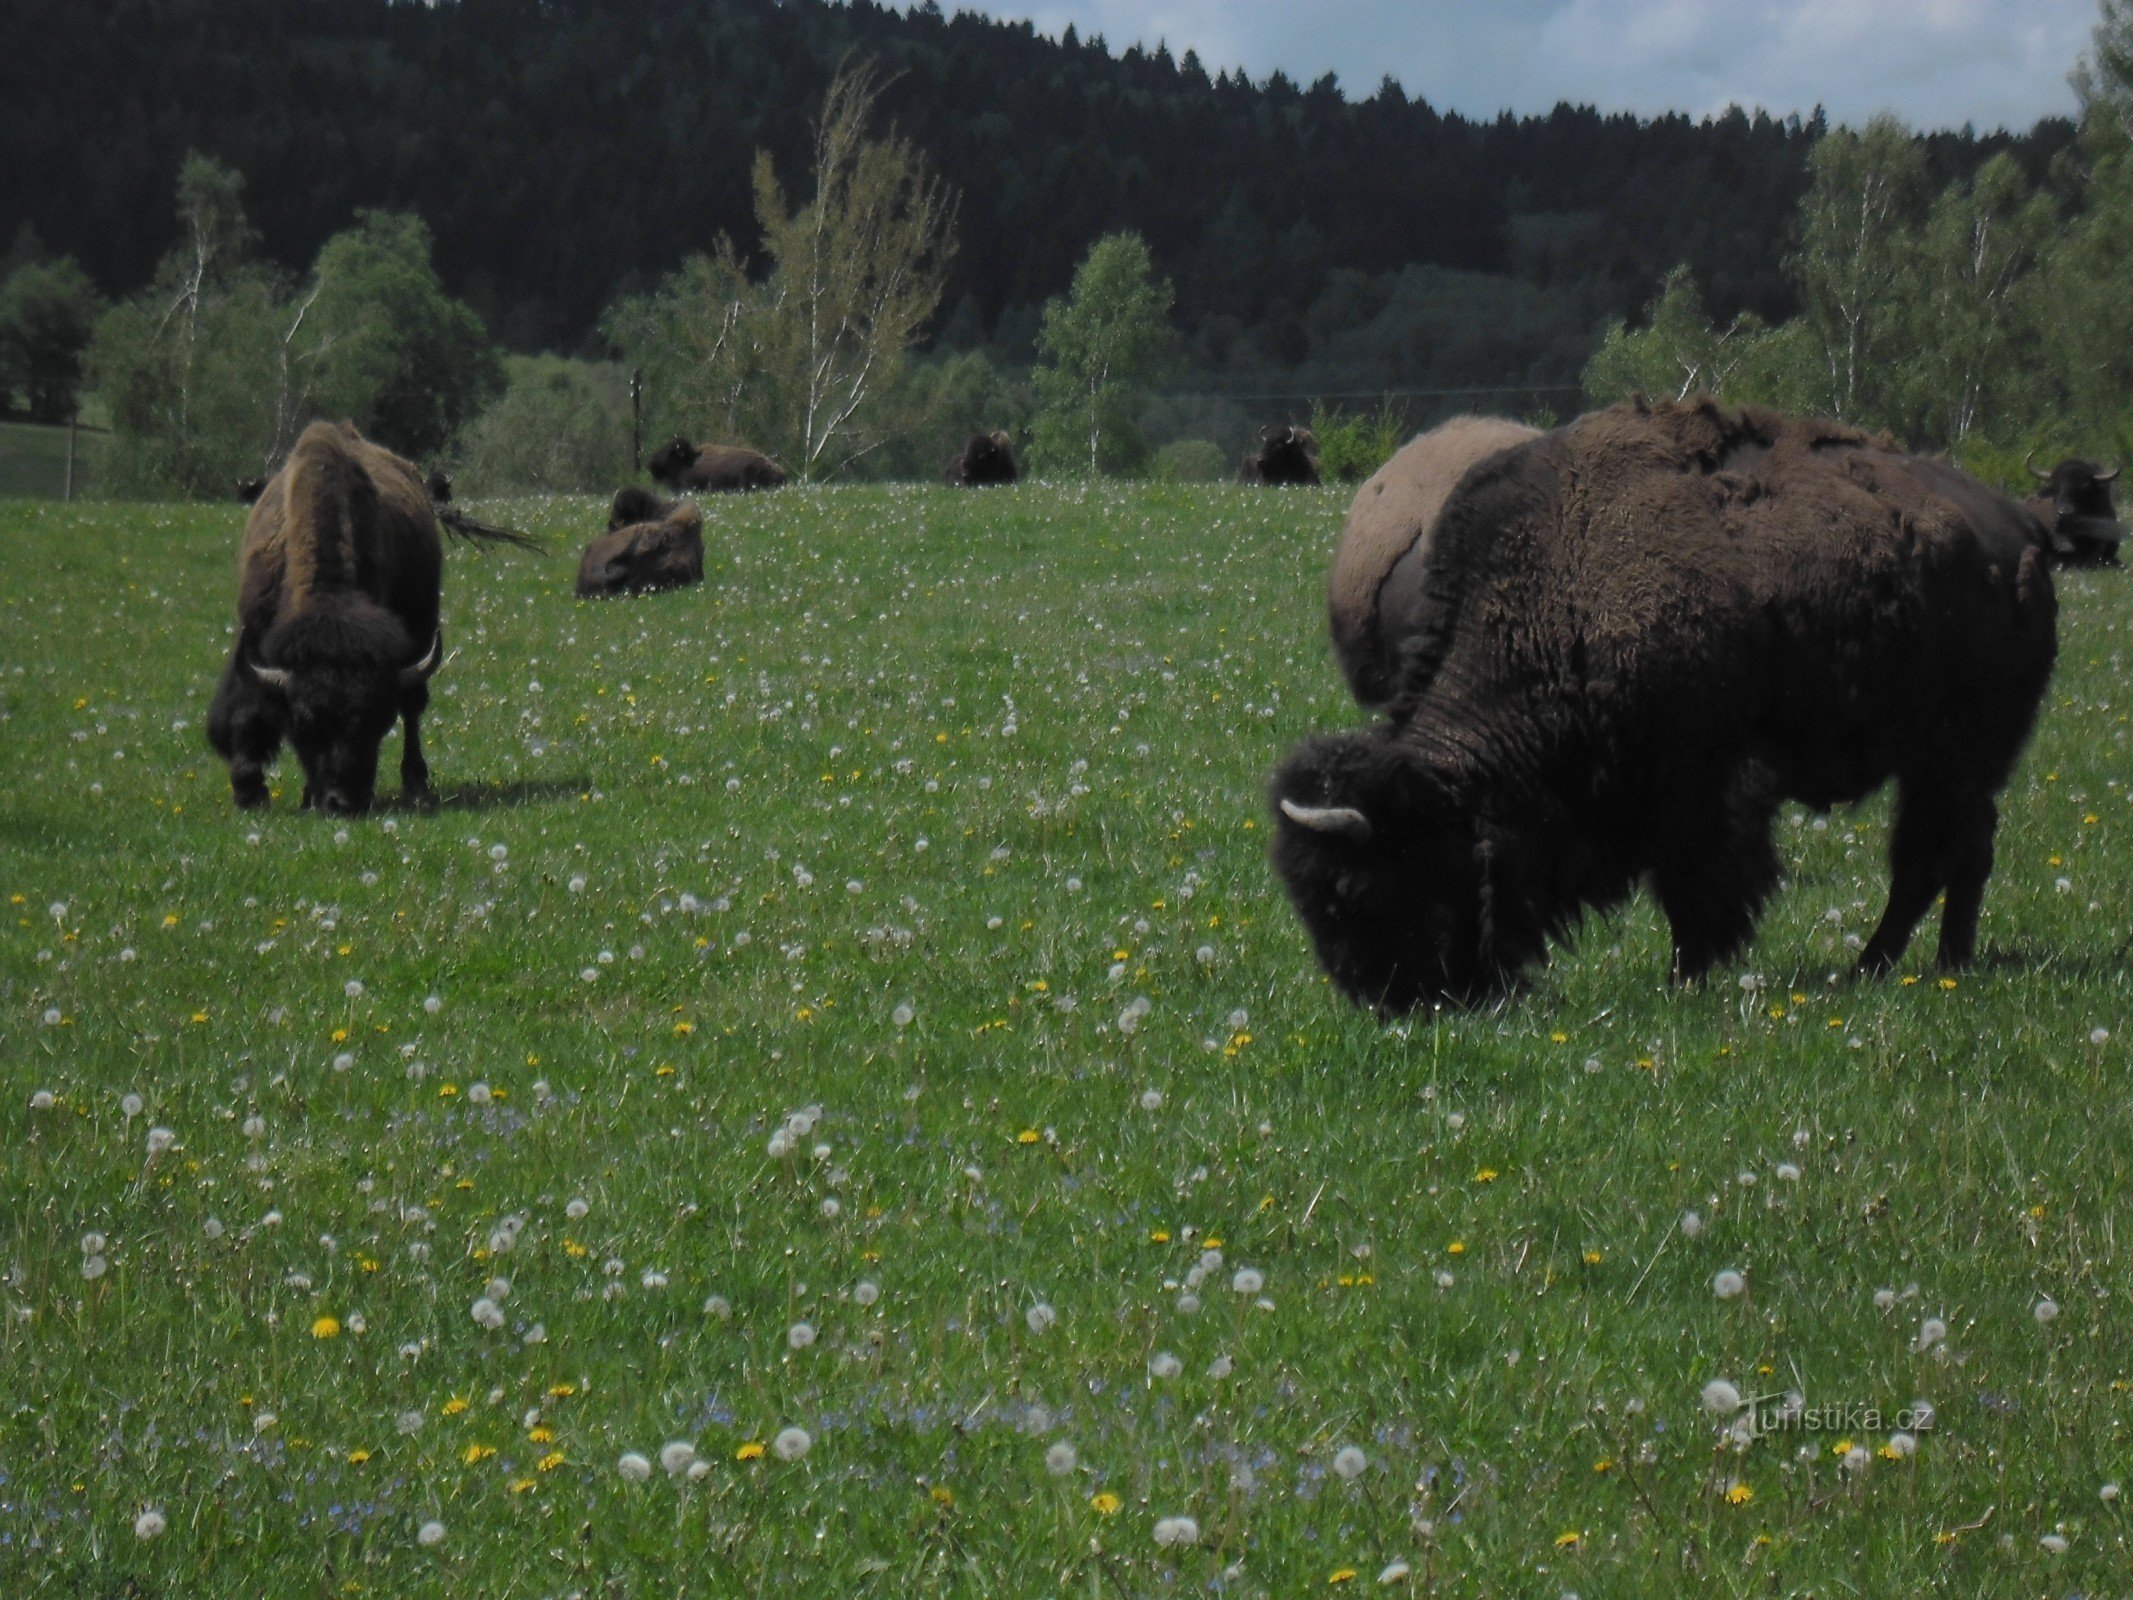 Khu bảo tồn bò rừng gần Veclov